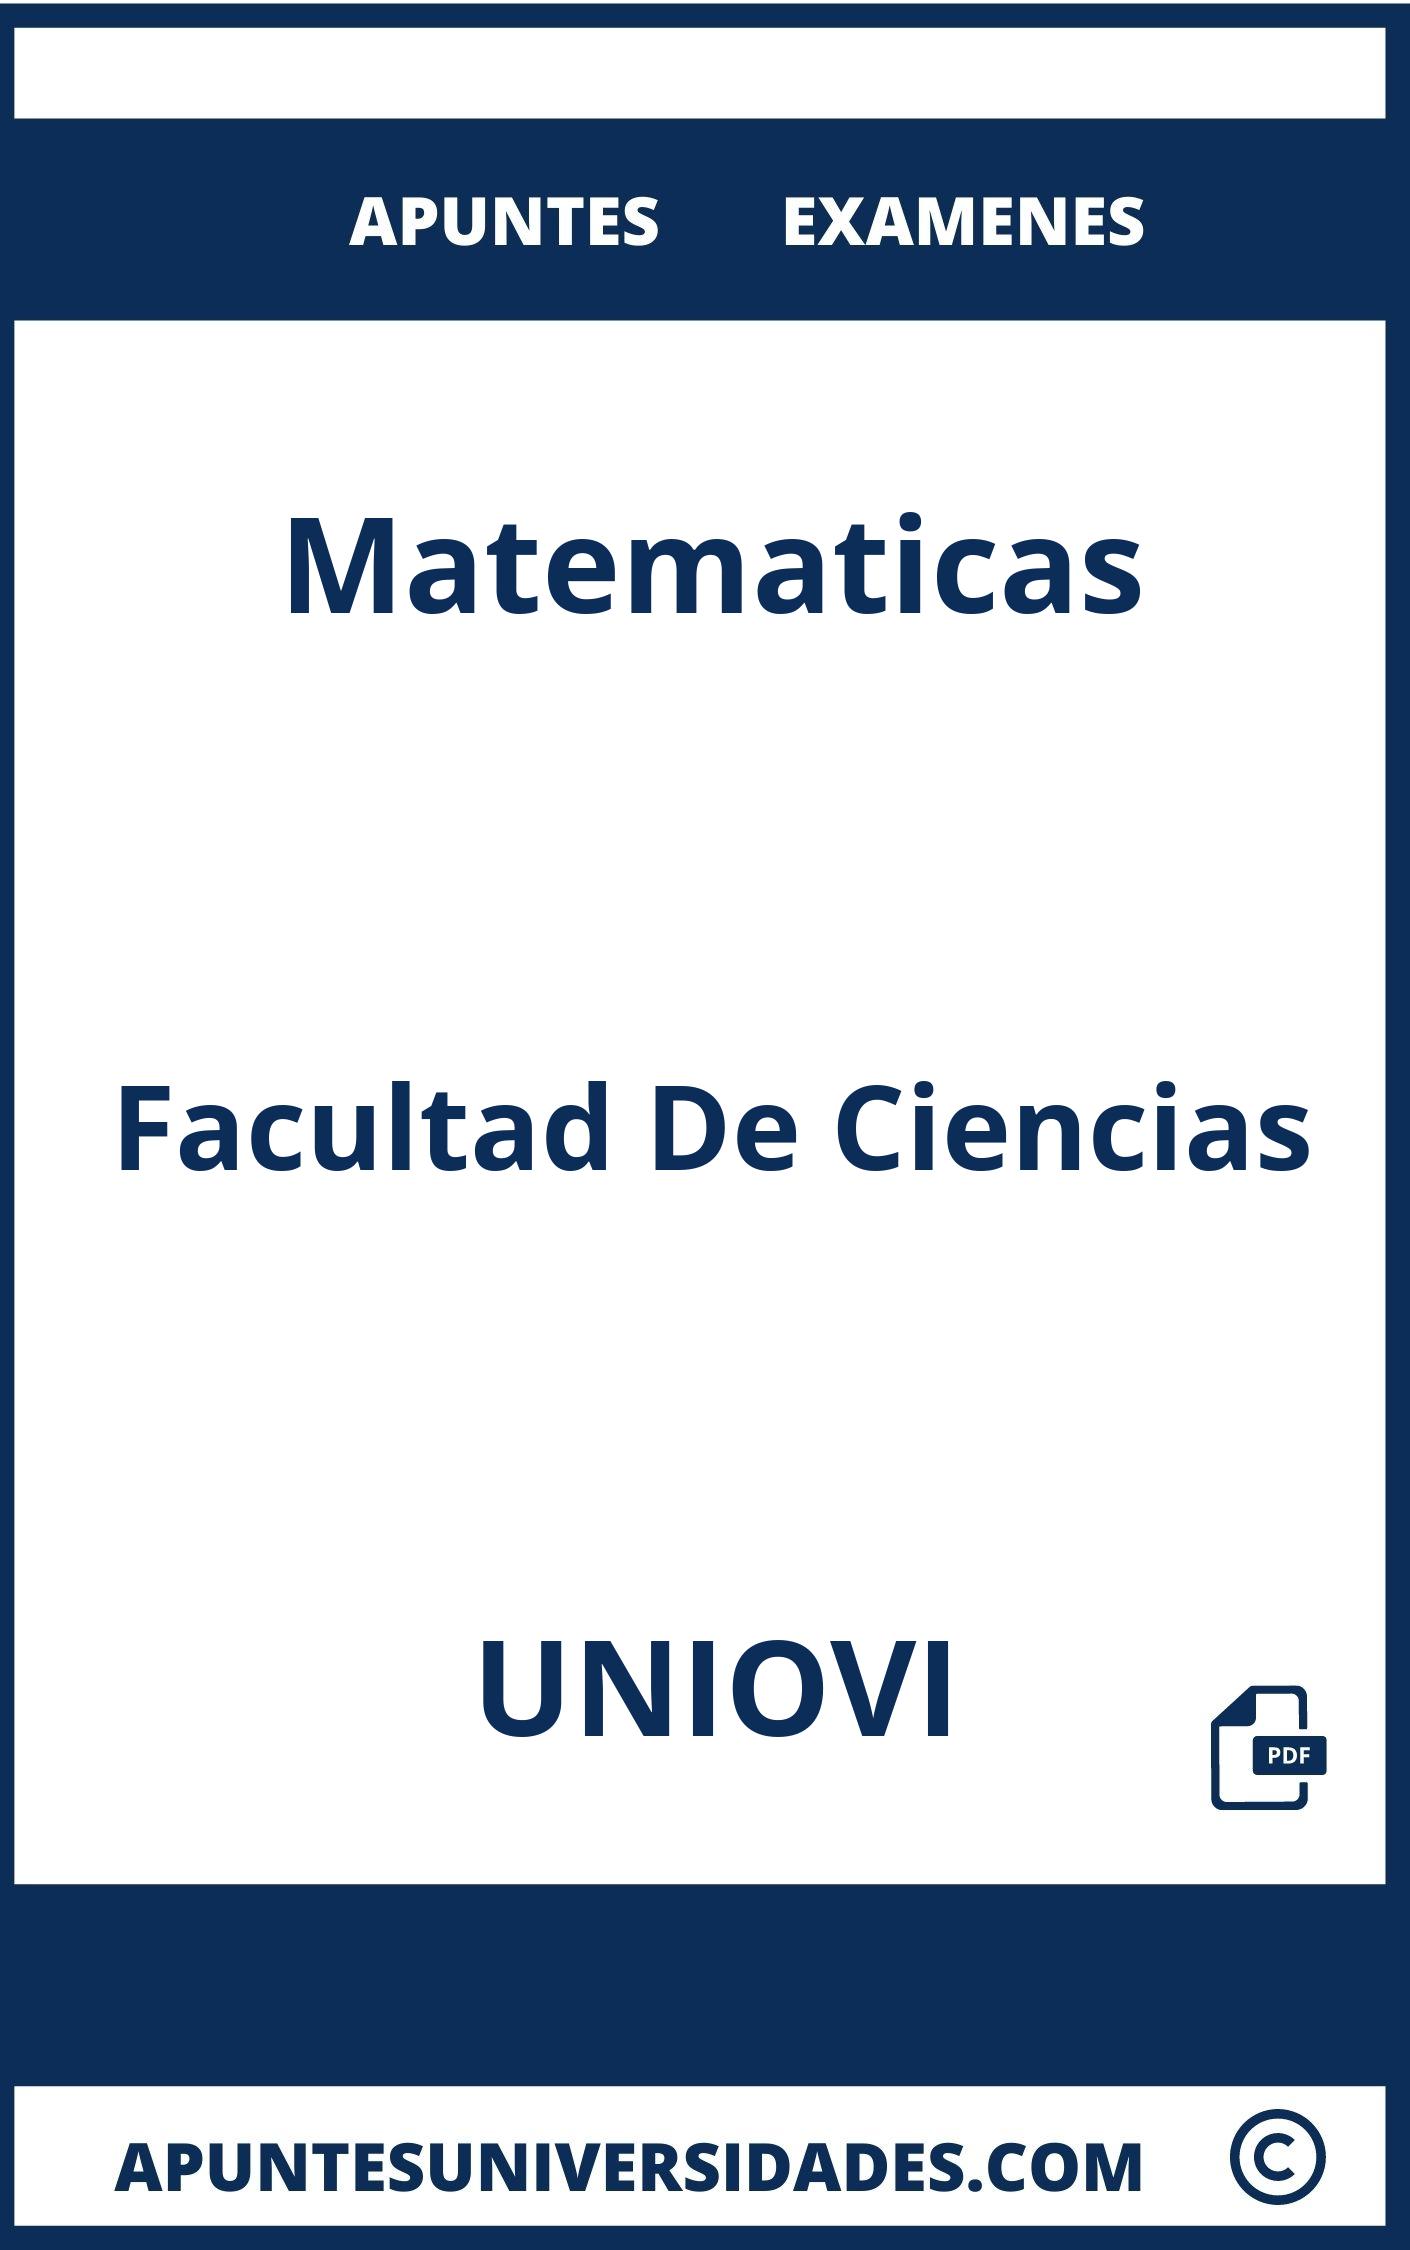 Examenes Apuntes Matematicas UNIOVI